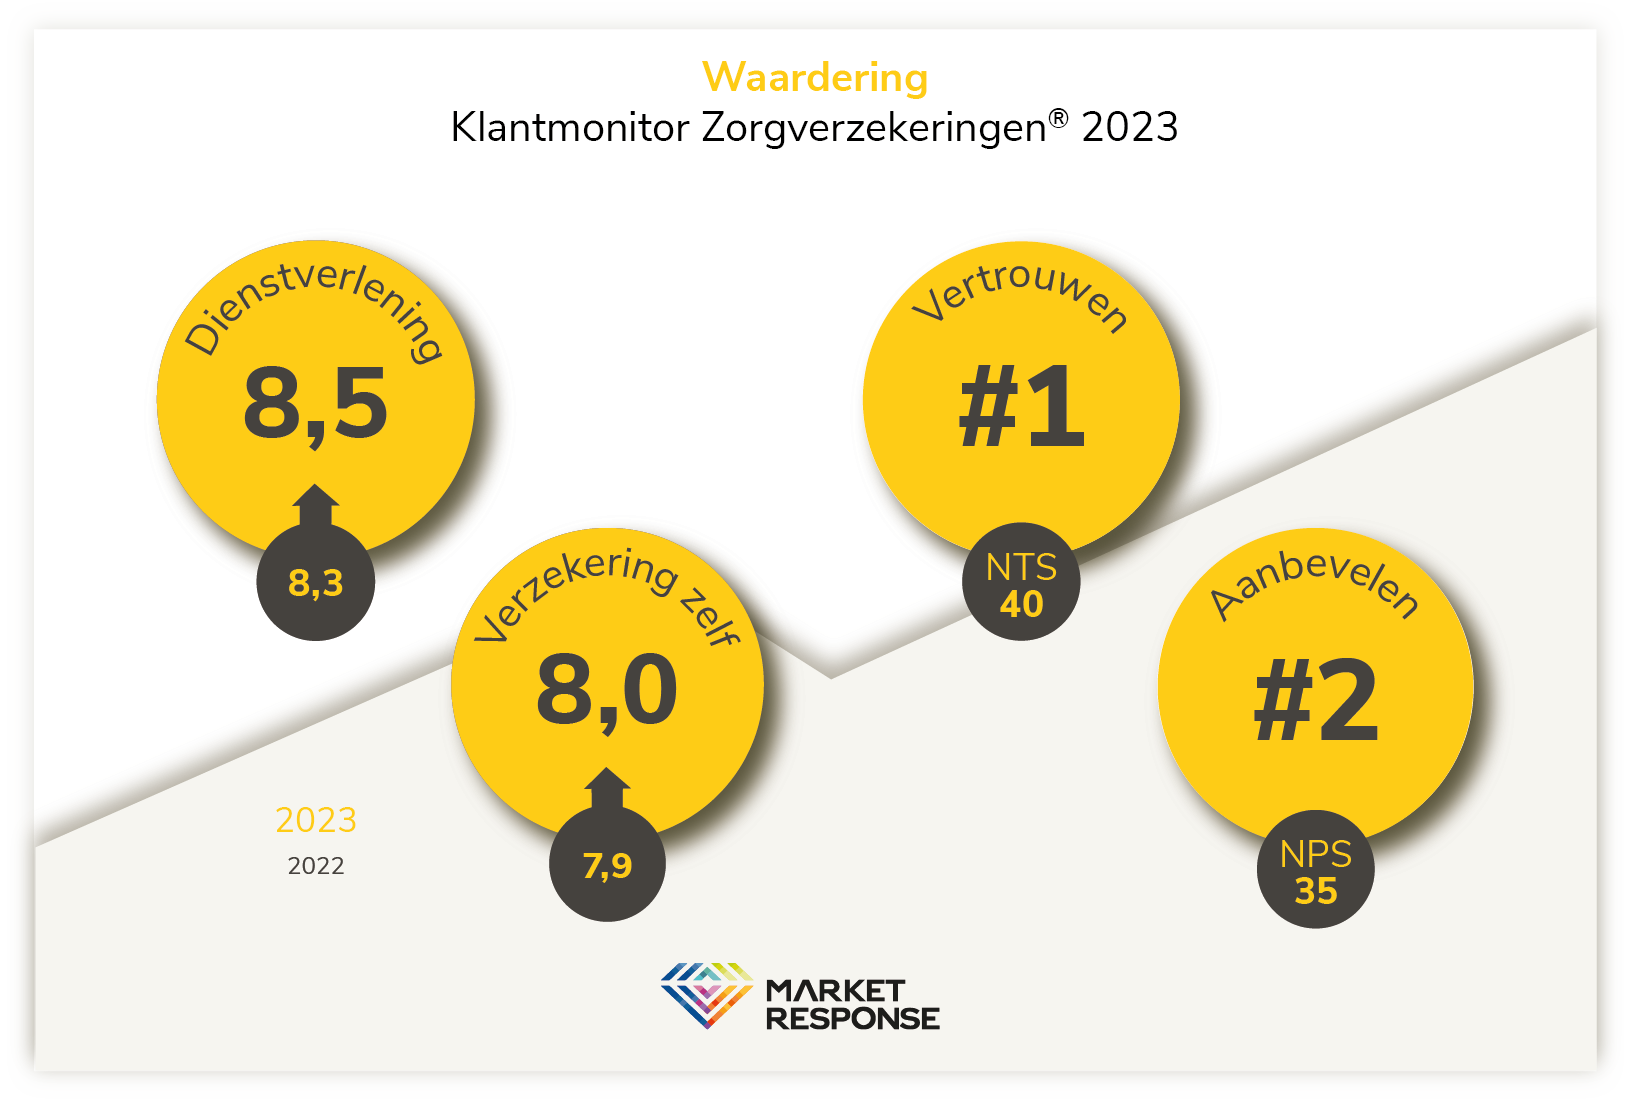 ONVZ beoordeeld als meest betrouwbare zorgverzekeraar in de KlantenMonitor Zorgverzekeringen 2023